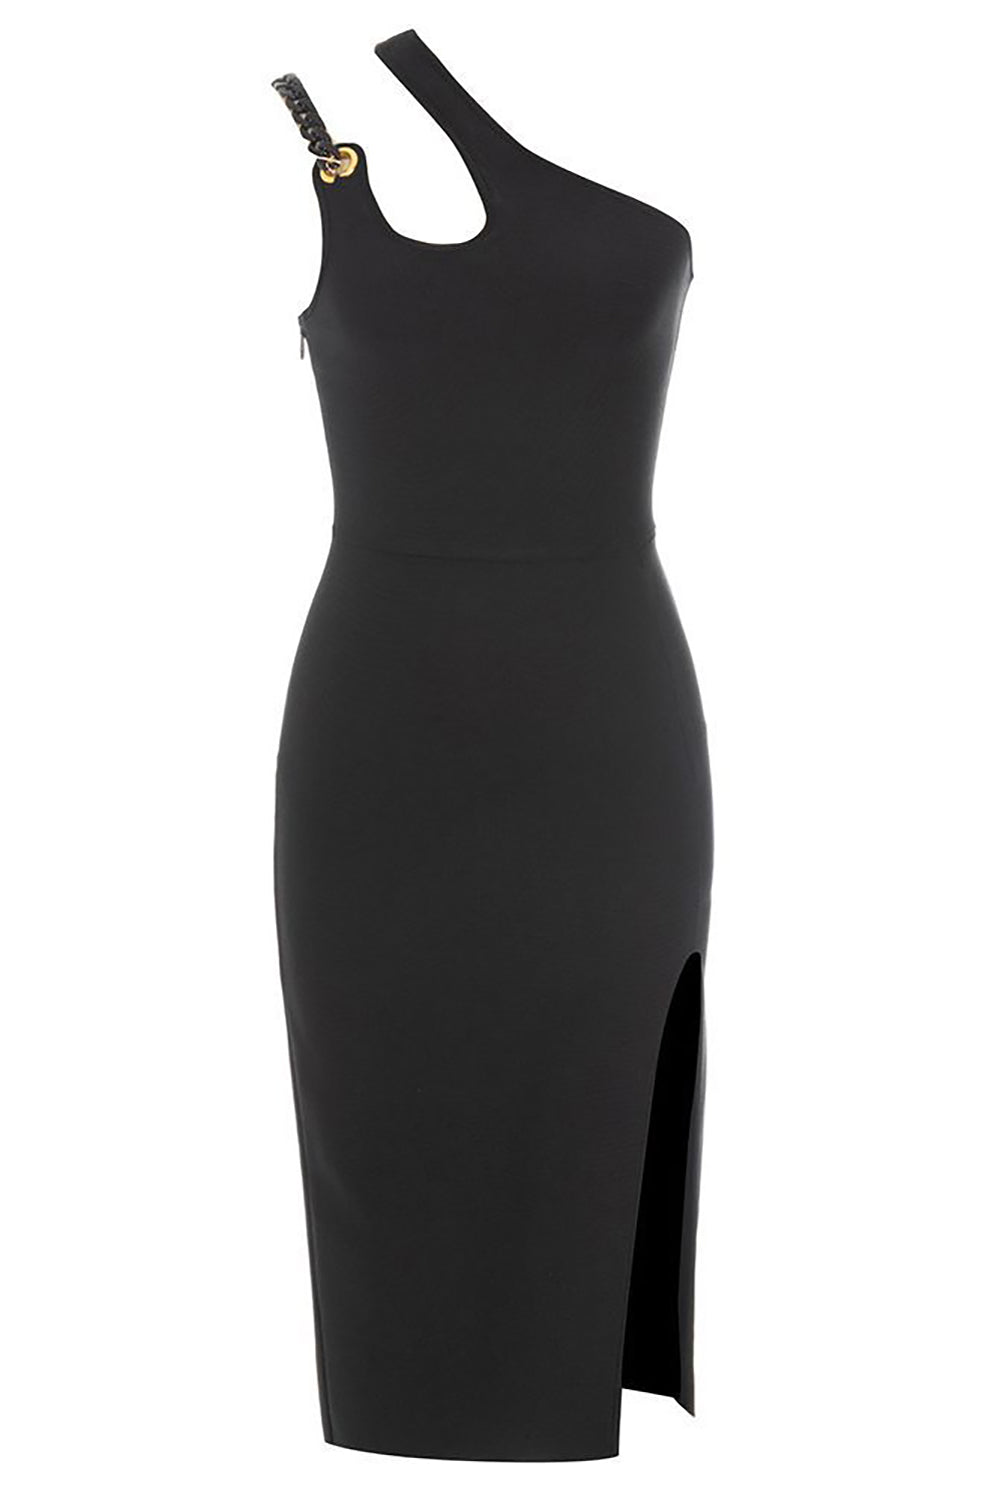 One Shoulder Black Cocktail Dress with Slit